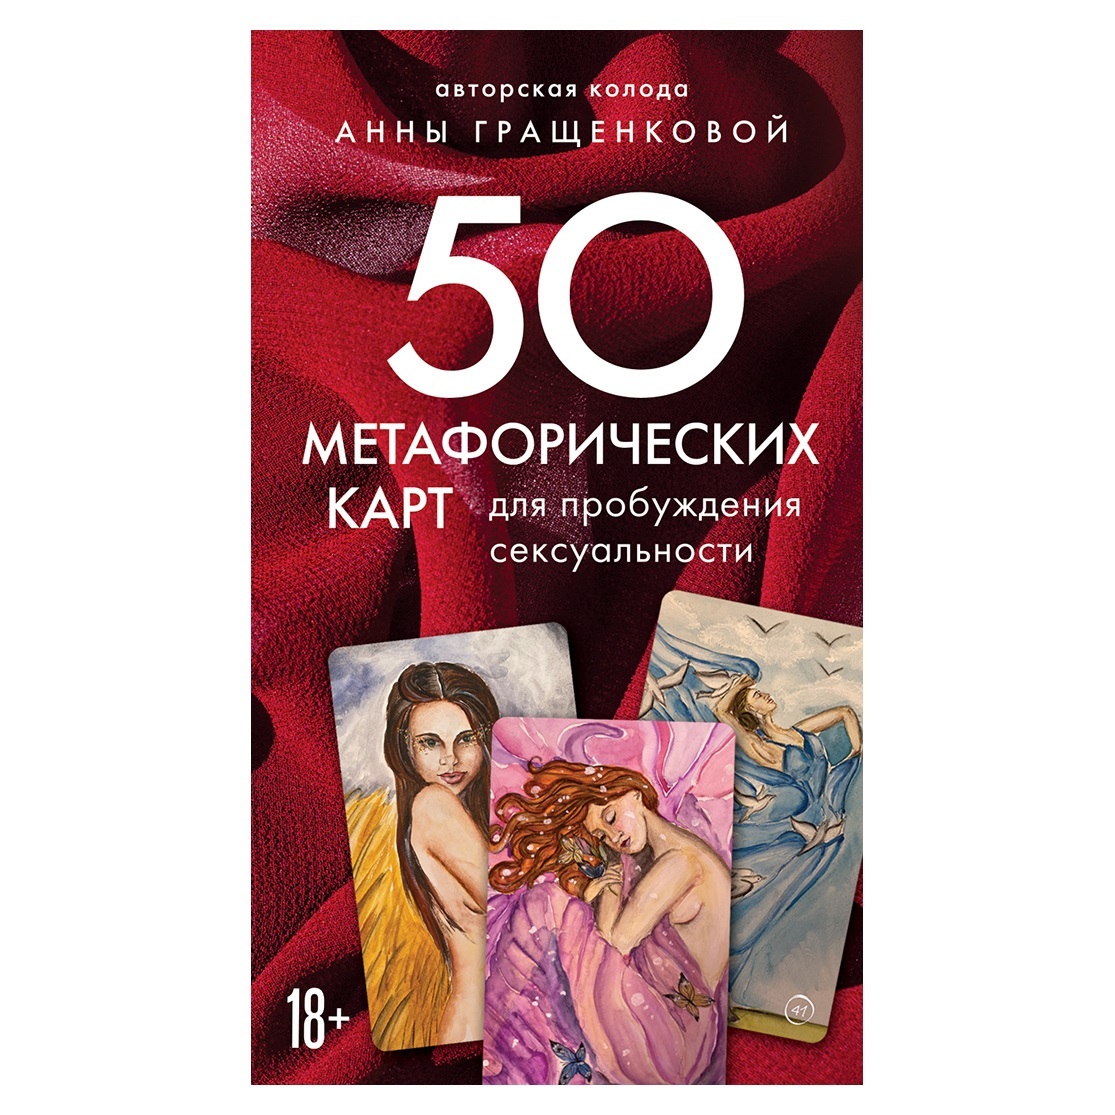 

50 метафорических карт для пробуждения сексуальности